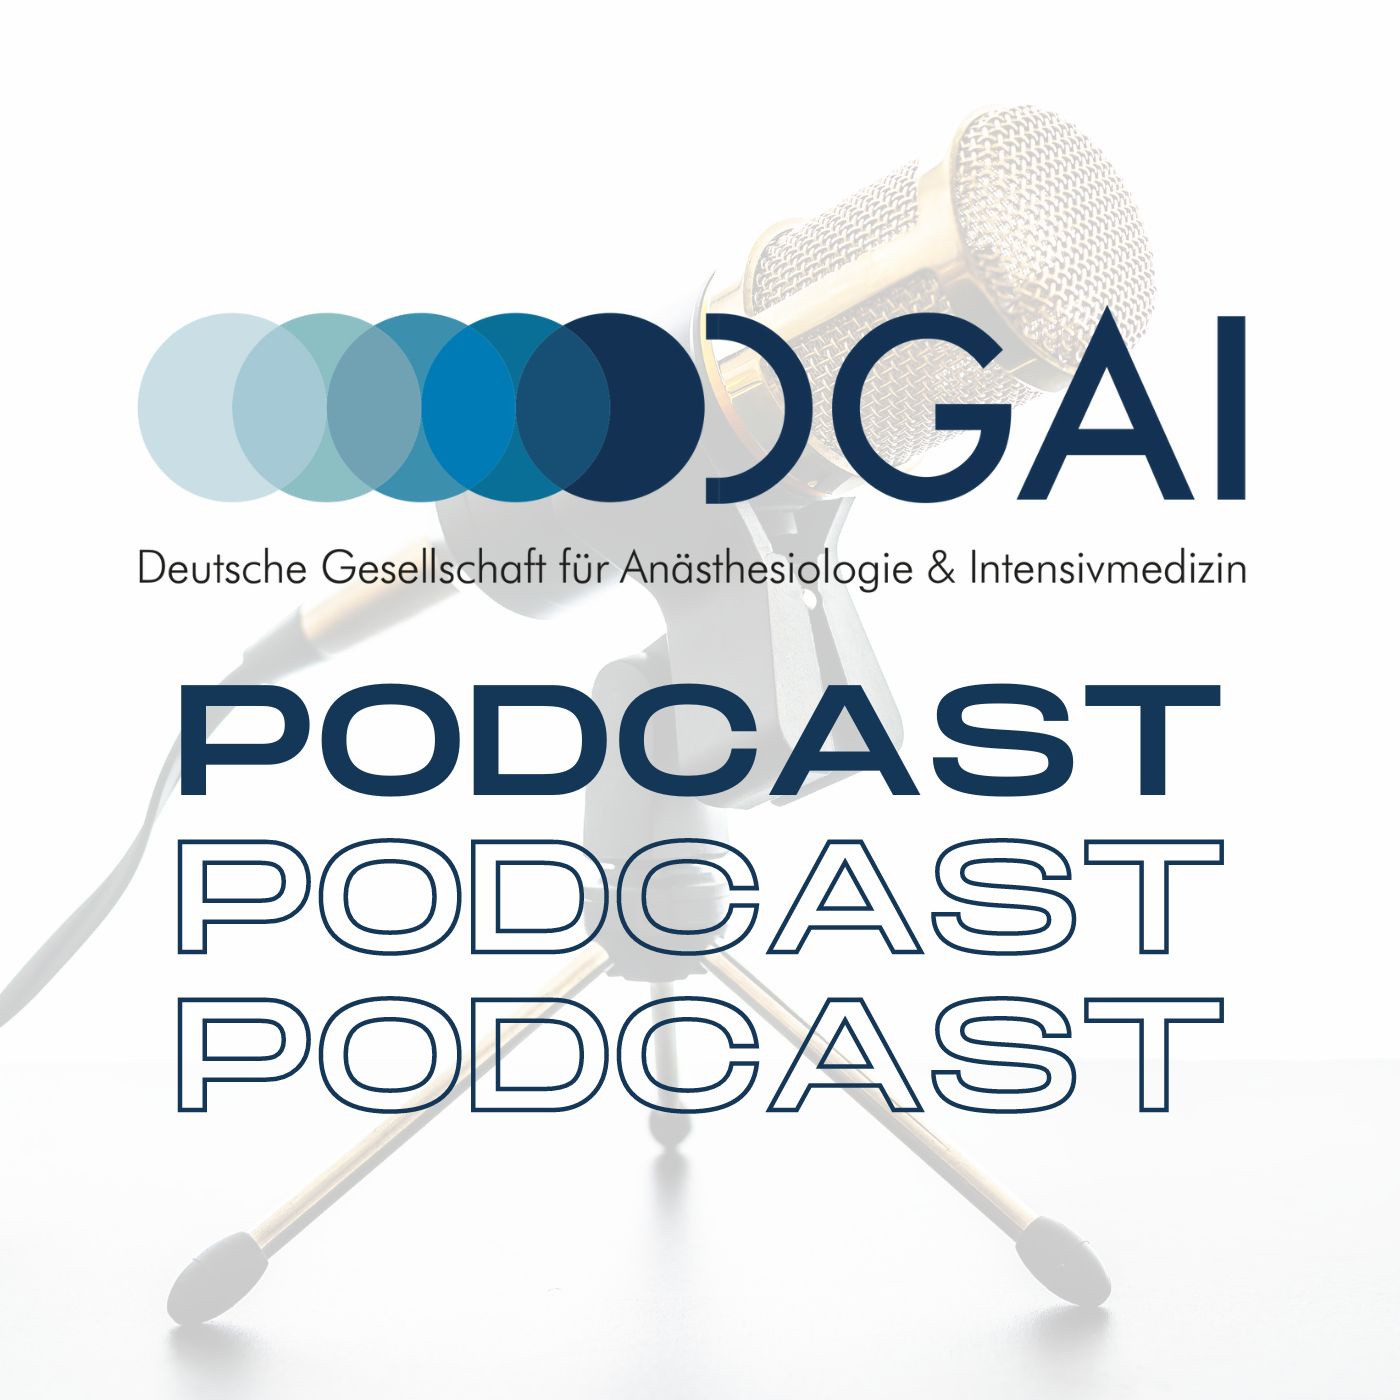 DGAI-Podcast - Deutsche Gesellschaft für Anästhesiologie und Intensivmedizin